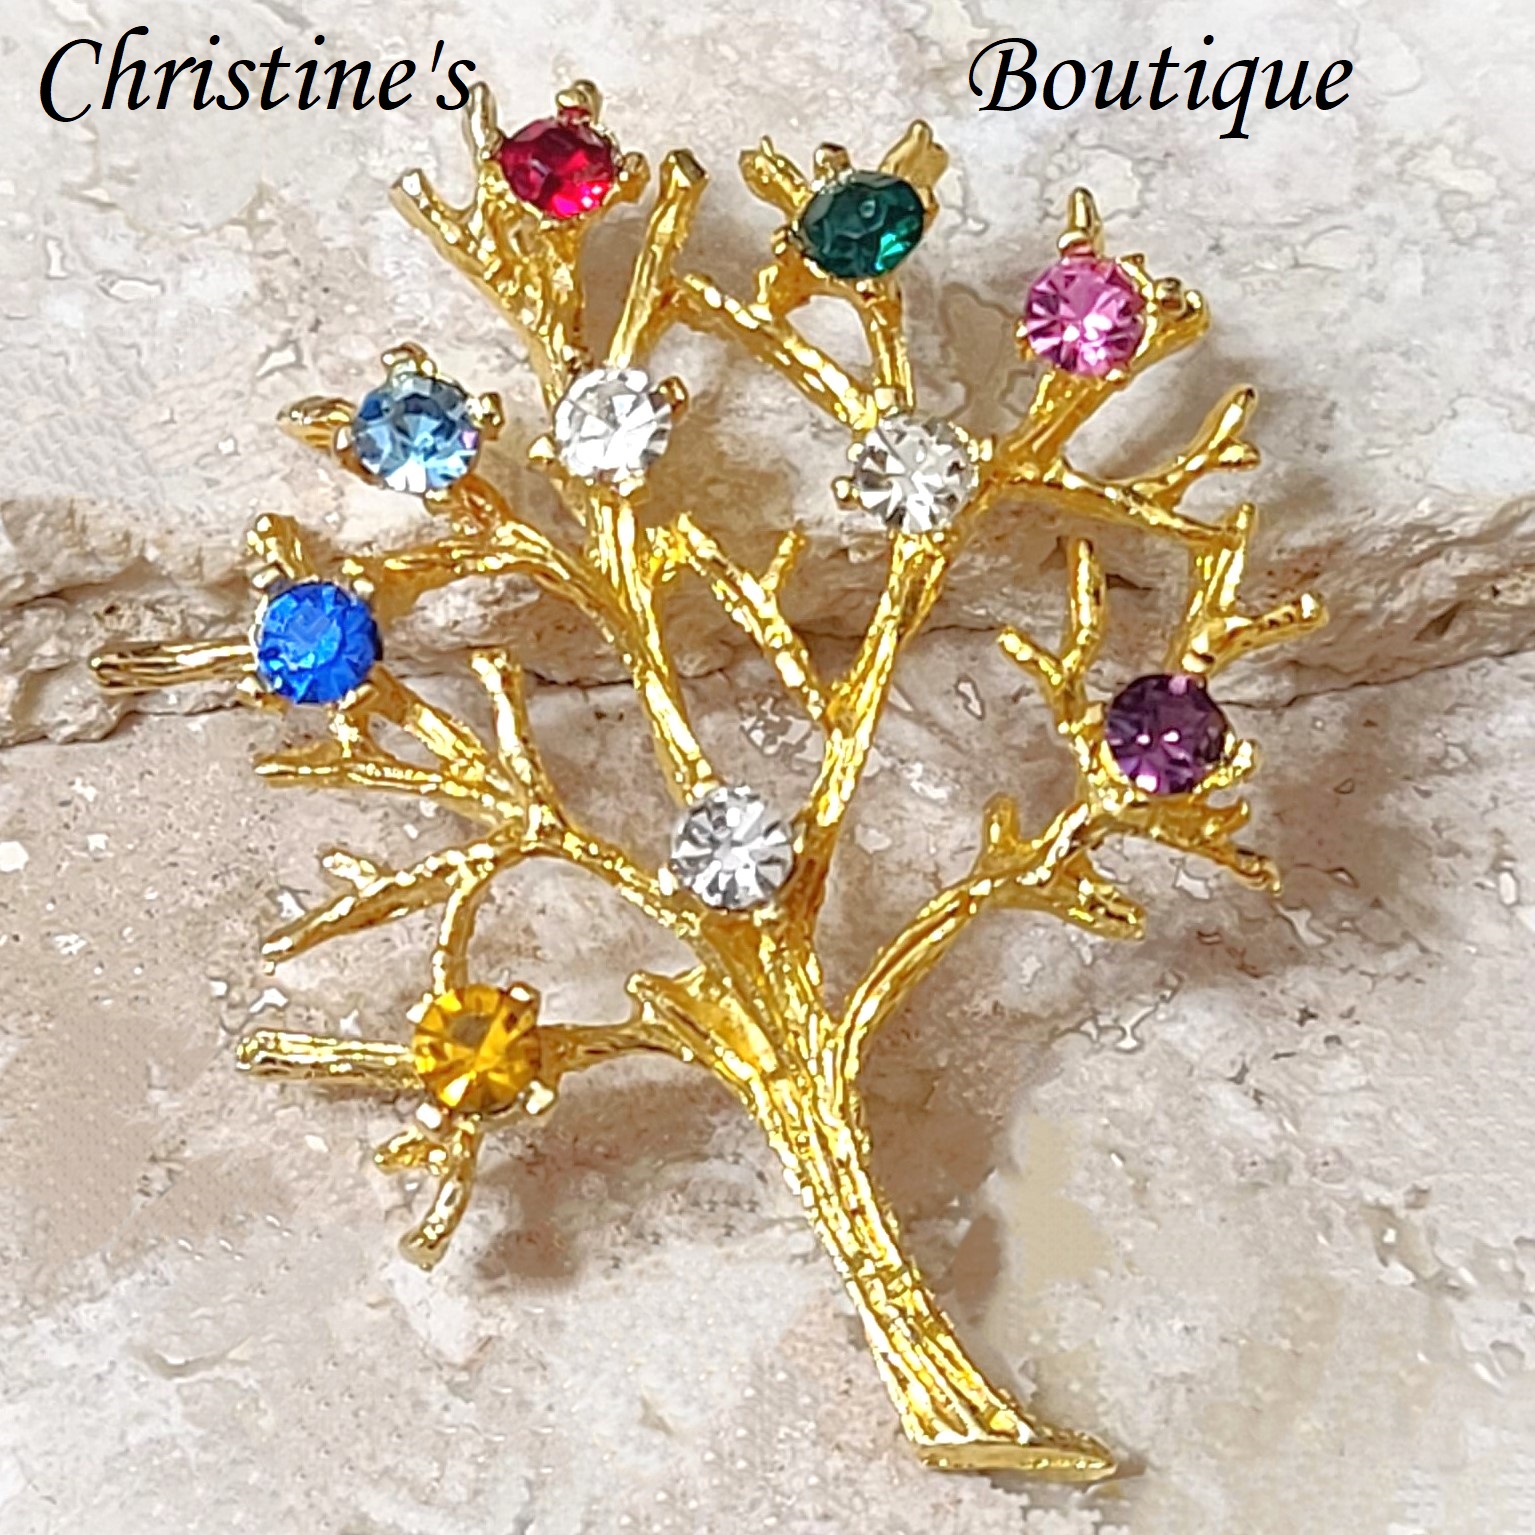 Rhinestone tree pendant, vintage pendant